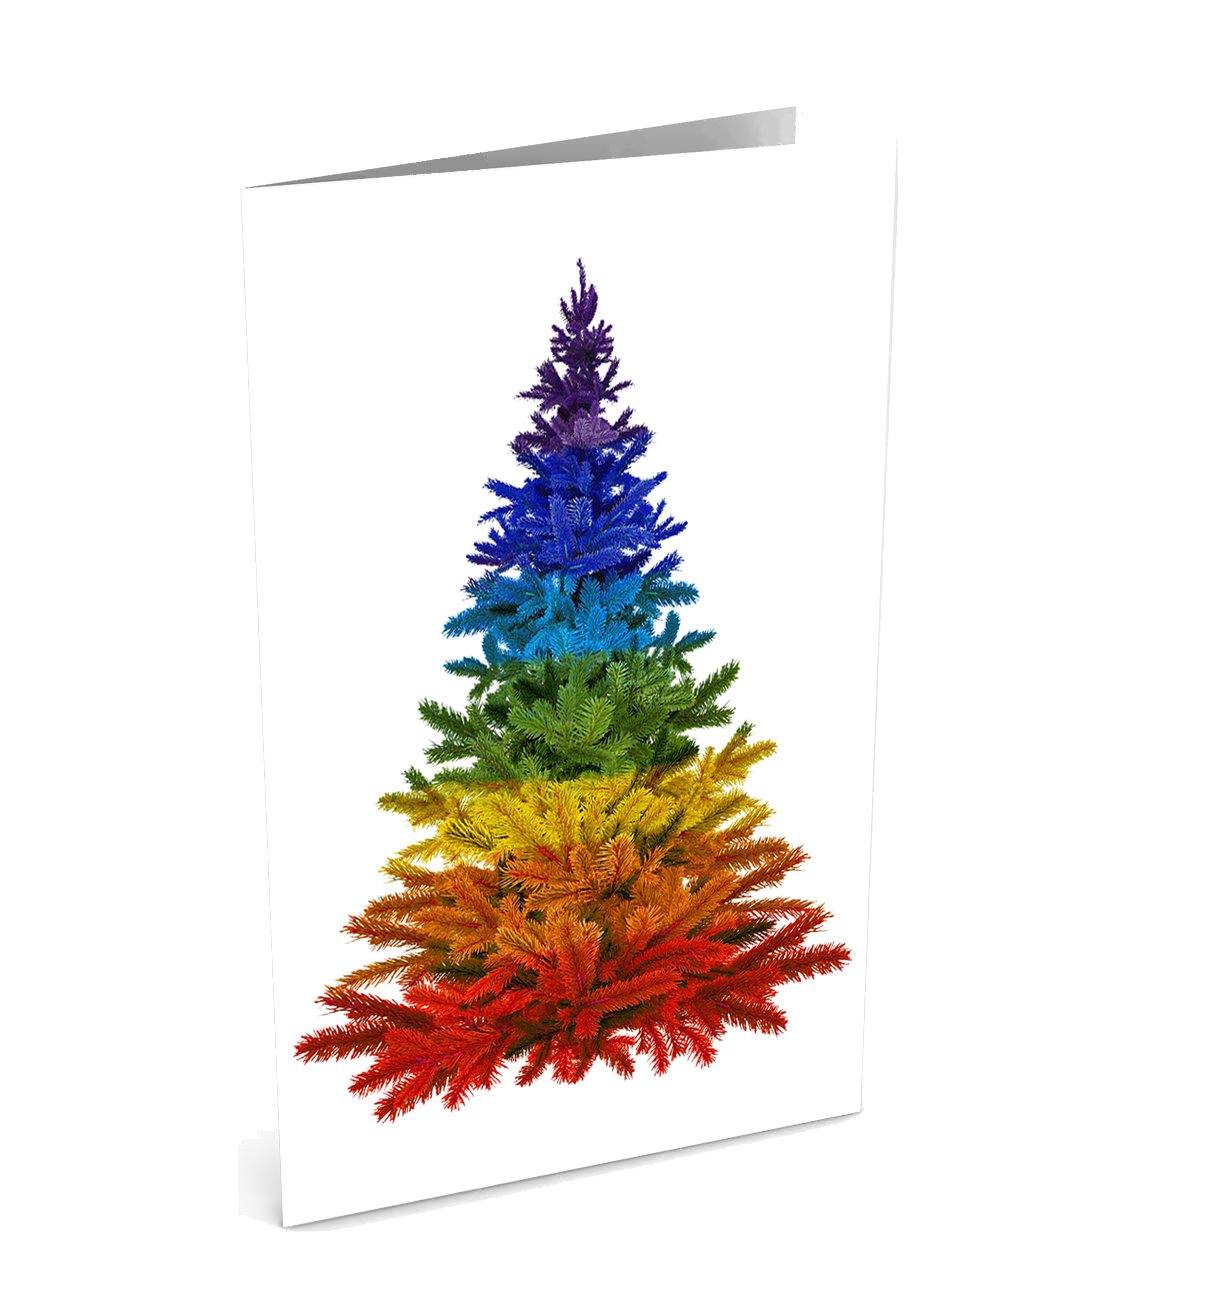 gay pride rainbow christmas tree